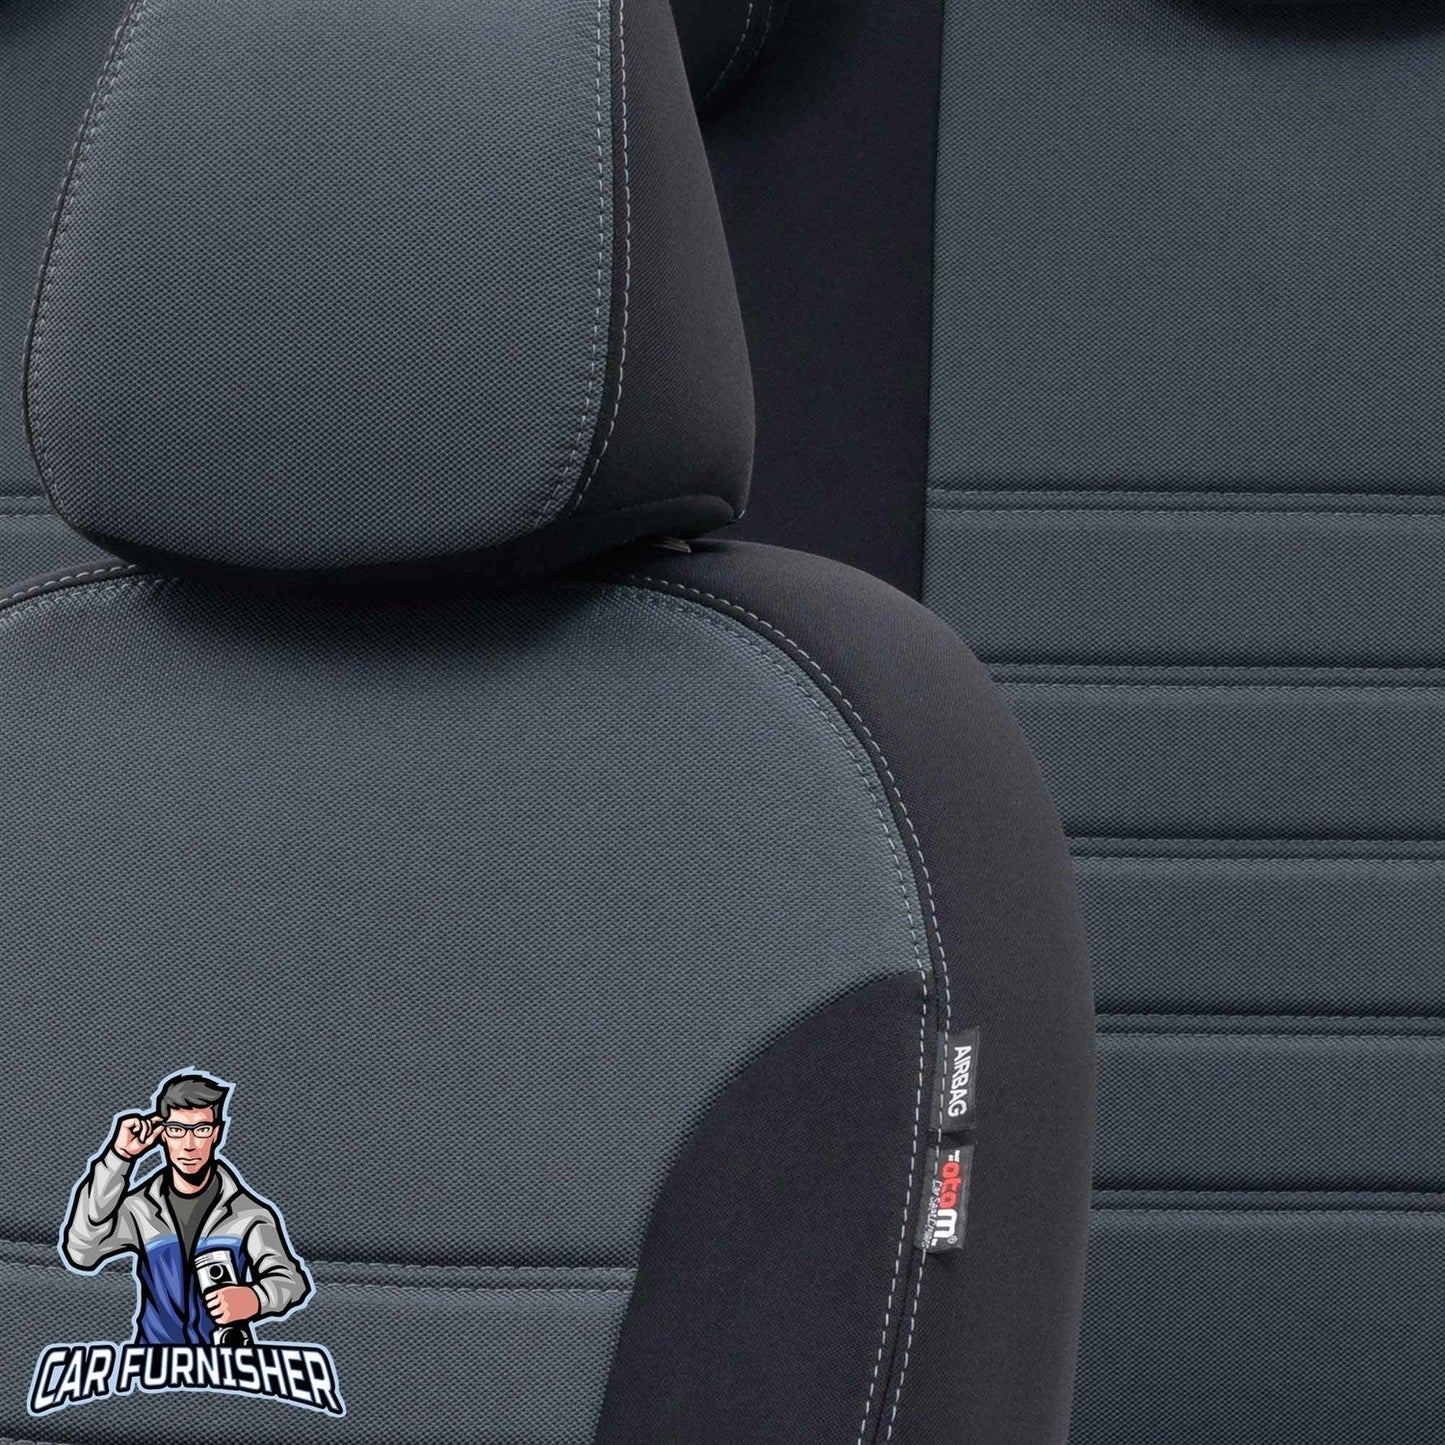 Fiat Bravo Seat Covers Original Jacquard Design Smoked Black Jacquard Fabric